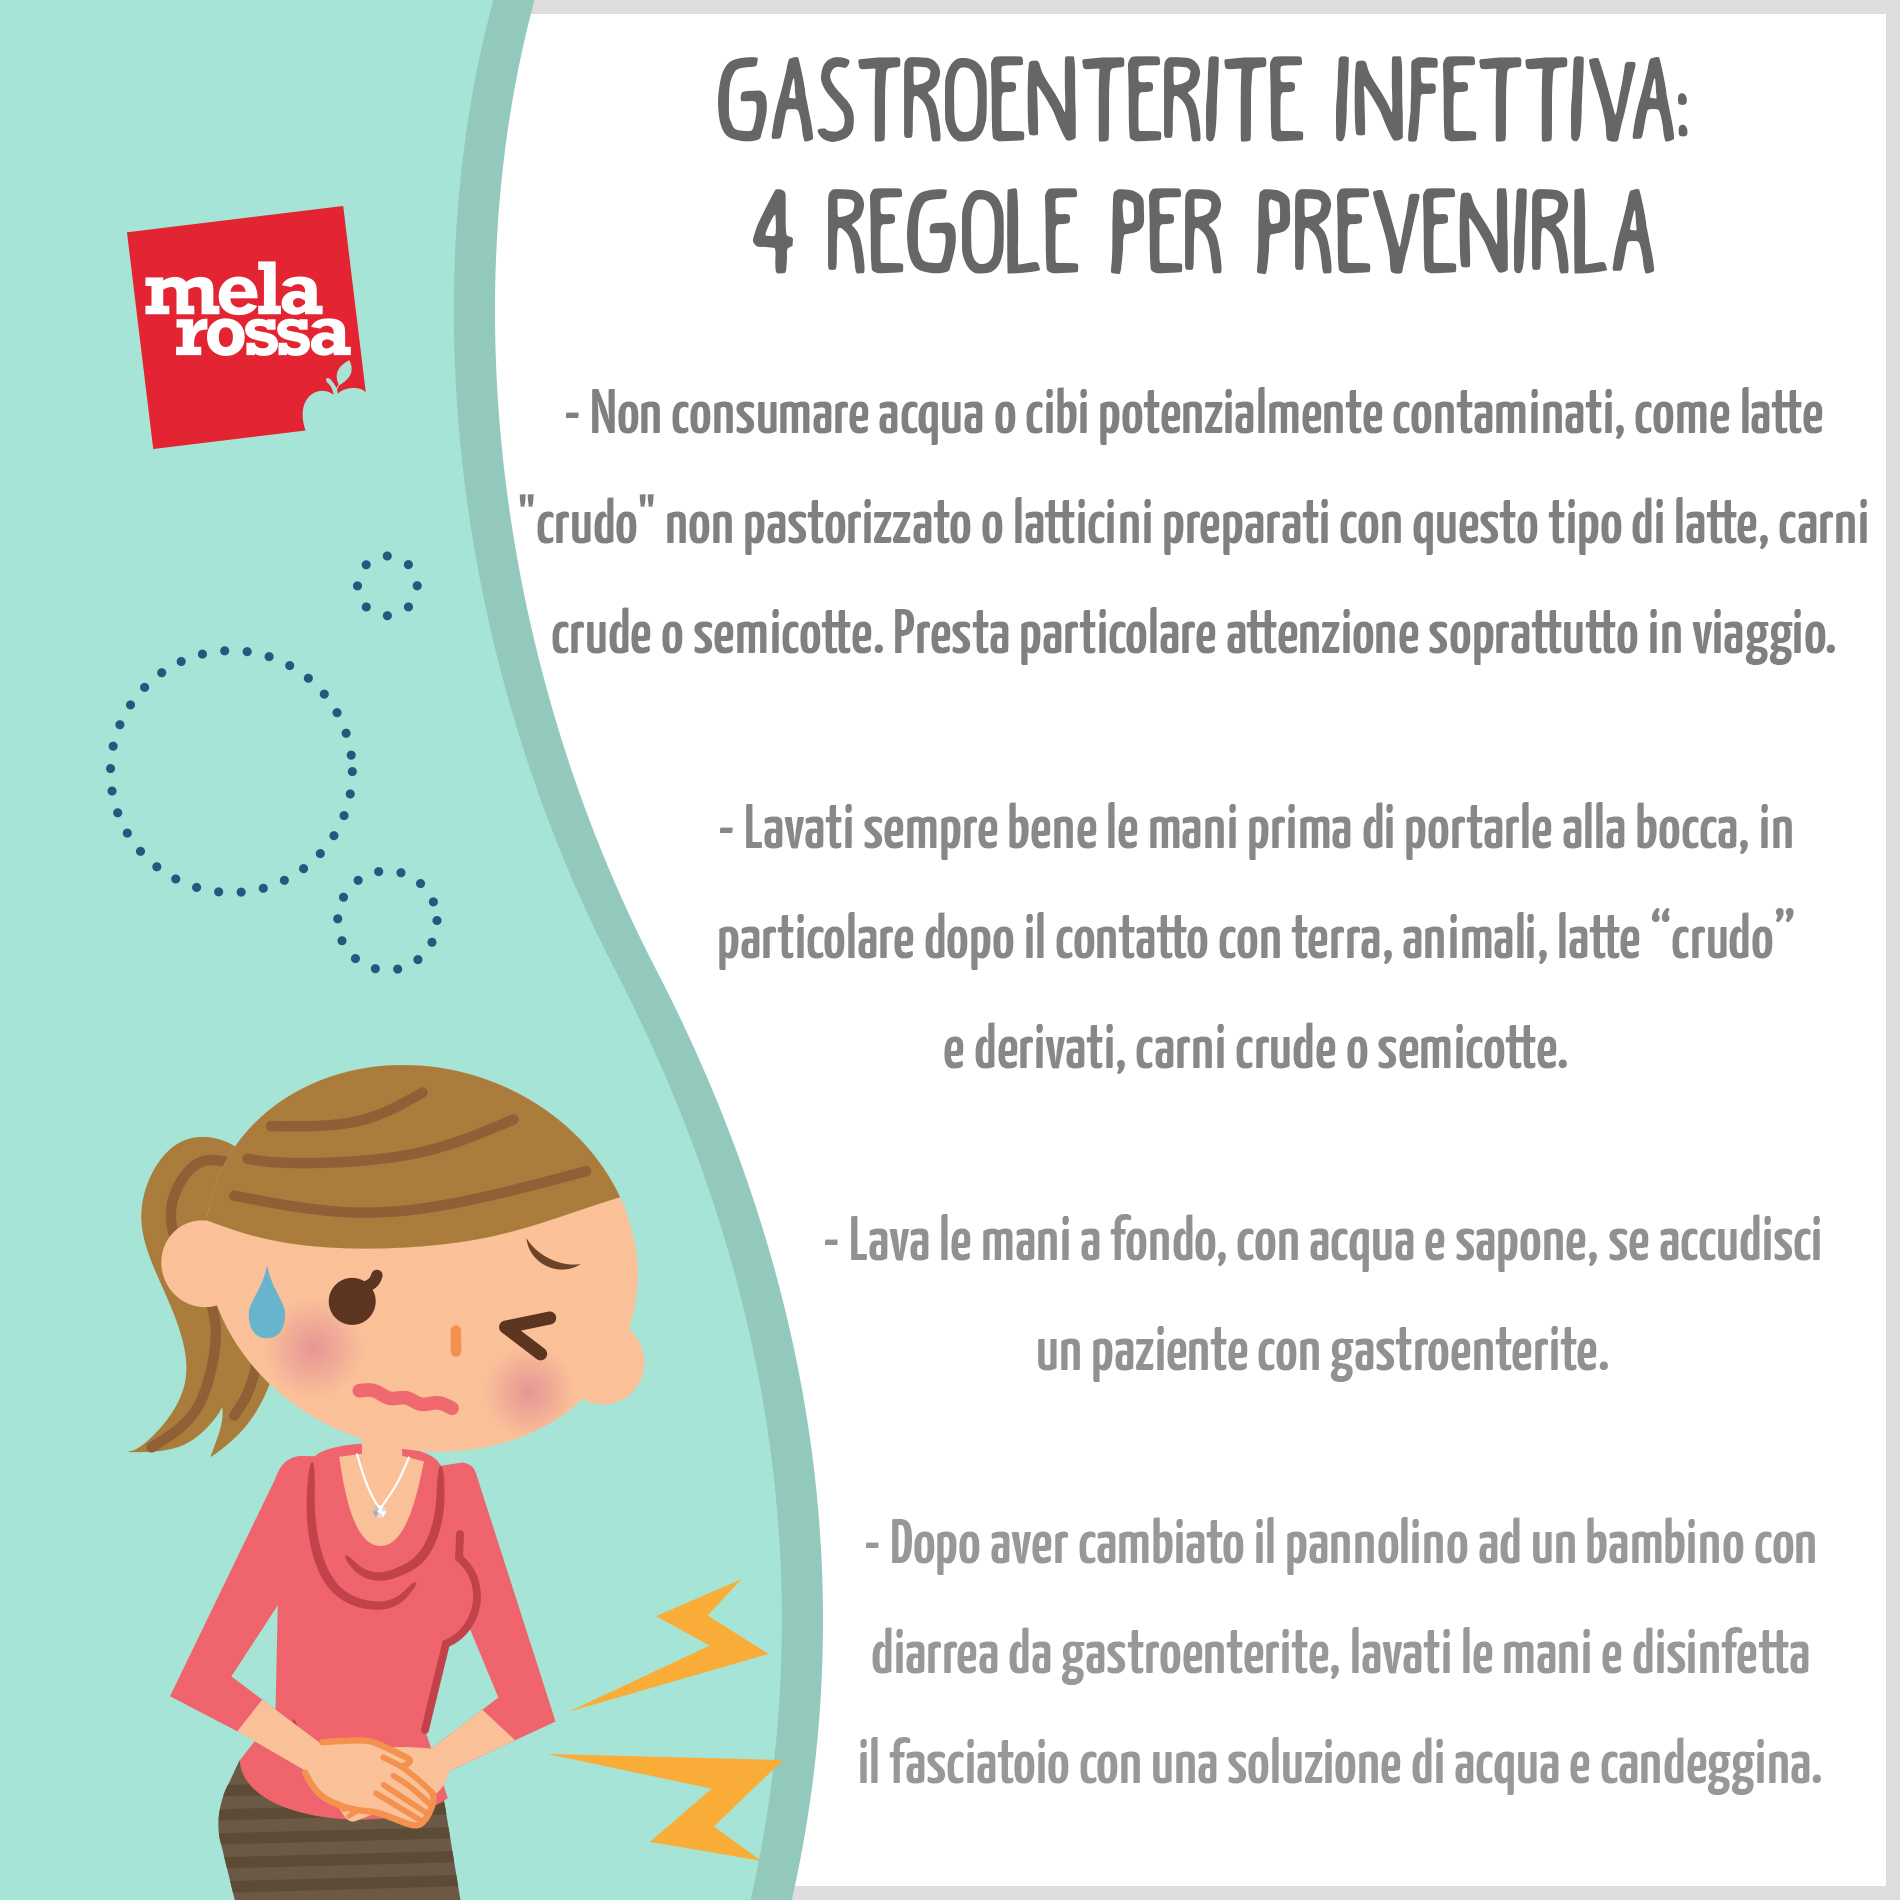 Gastroenterite infettiva: 4 regole per prevenirla